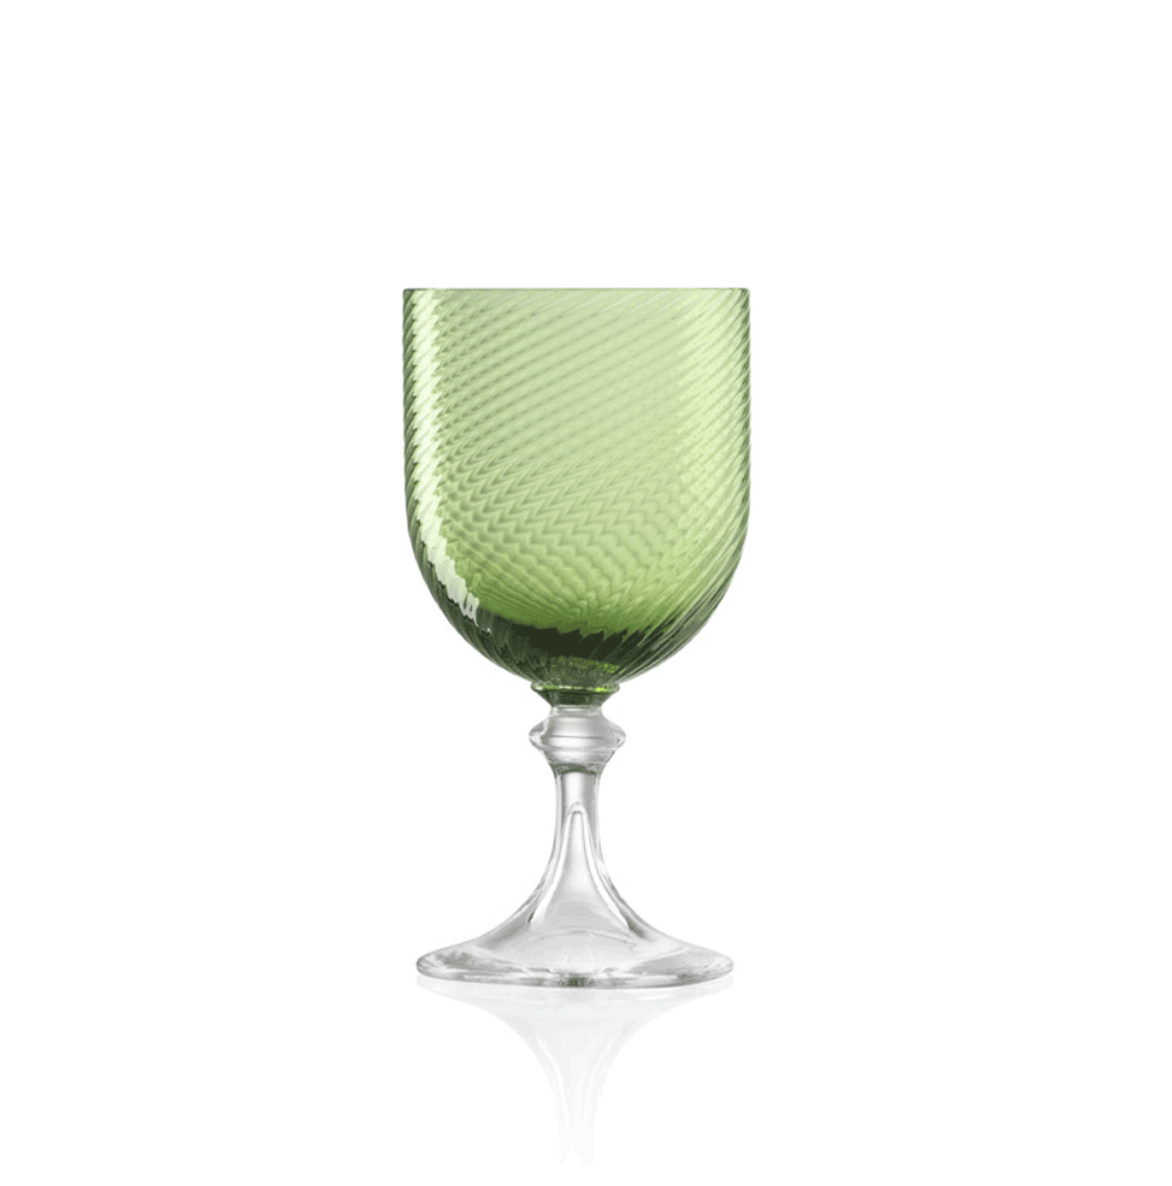 Murano White Wine Glass, Sage Green